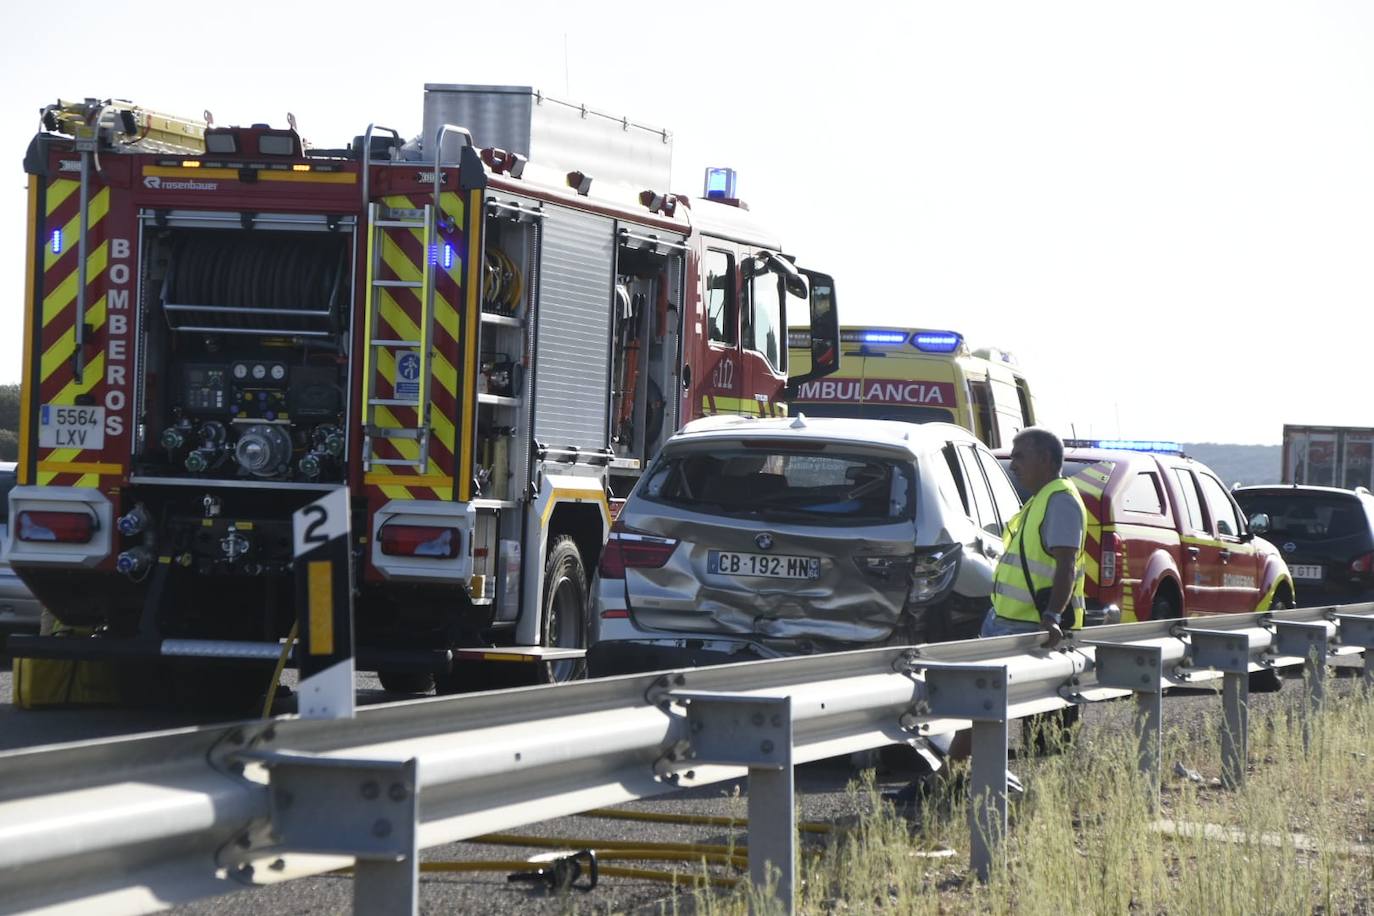 Así fue el espectacular accidente en La Fuente de San Esteban: un camión, tres coches y cuatro heridos